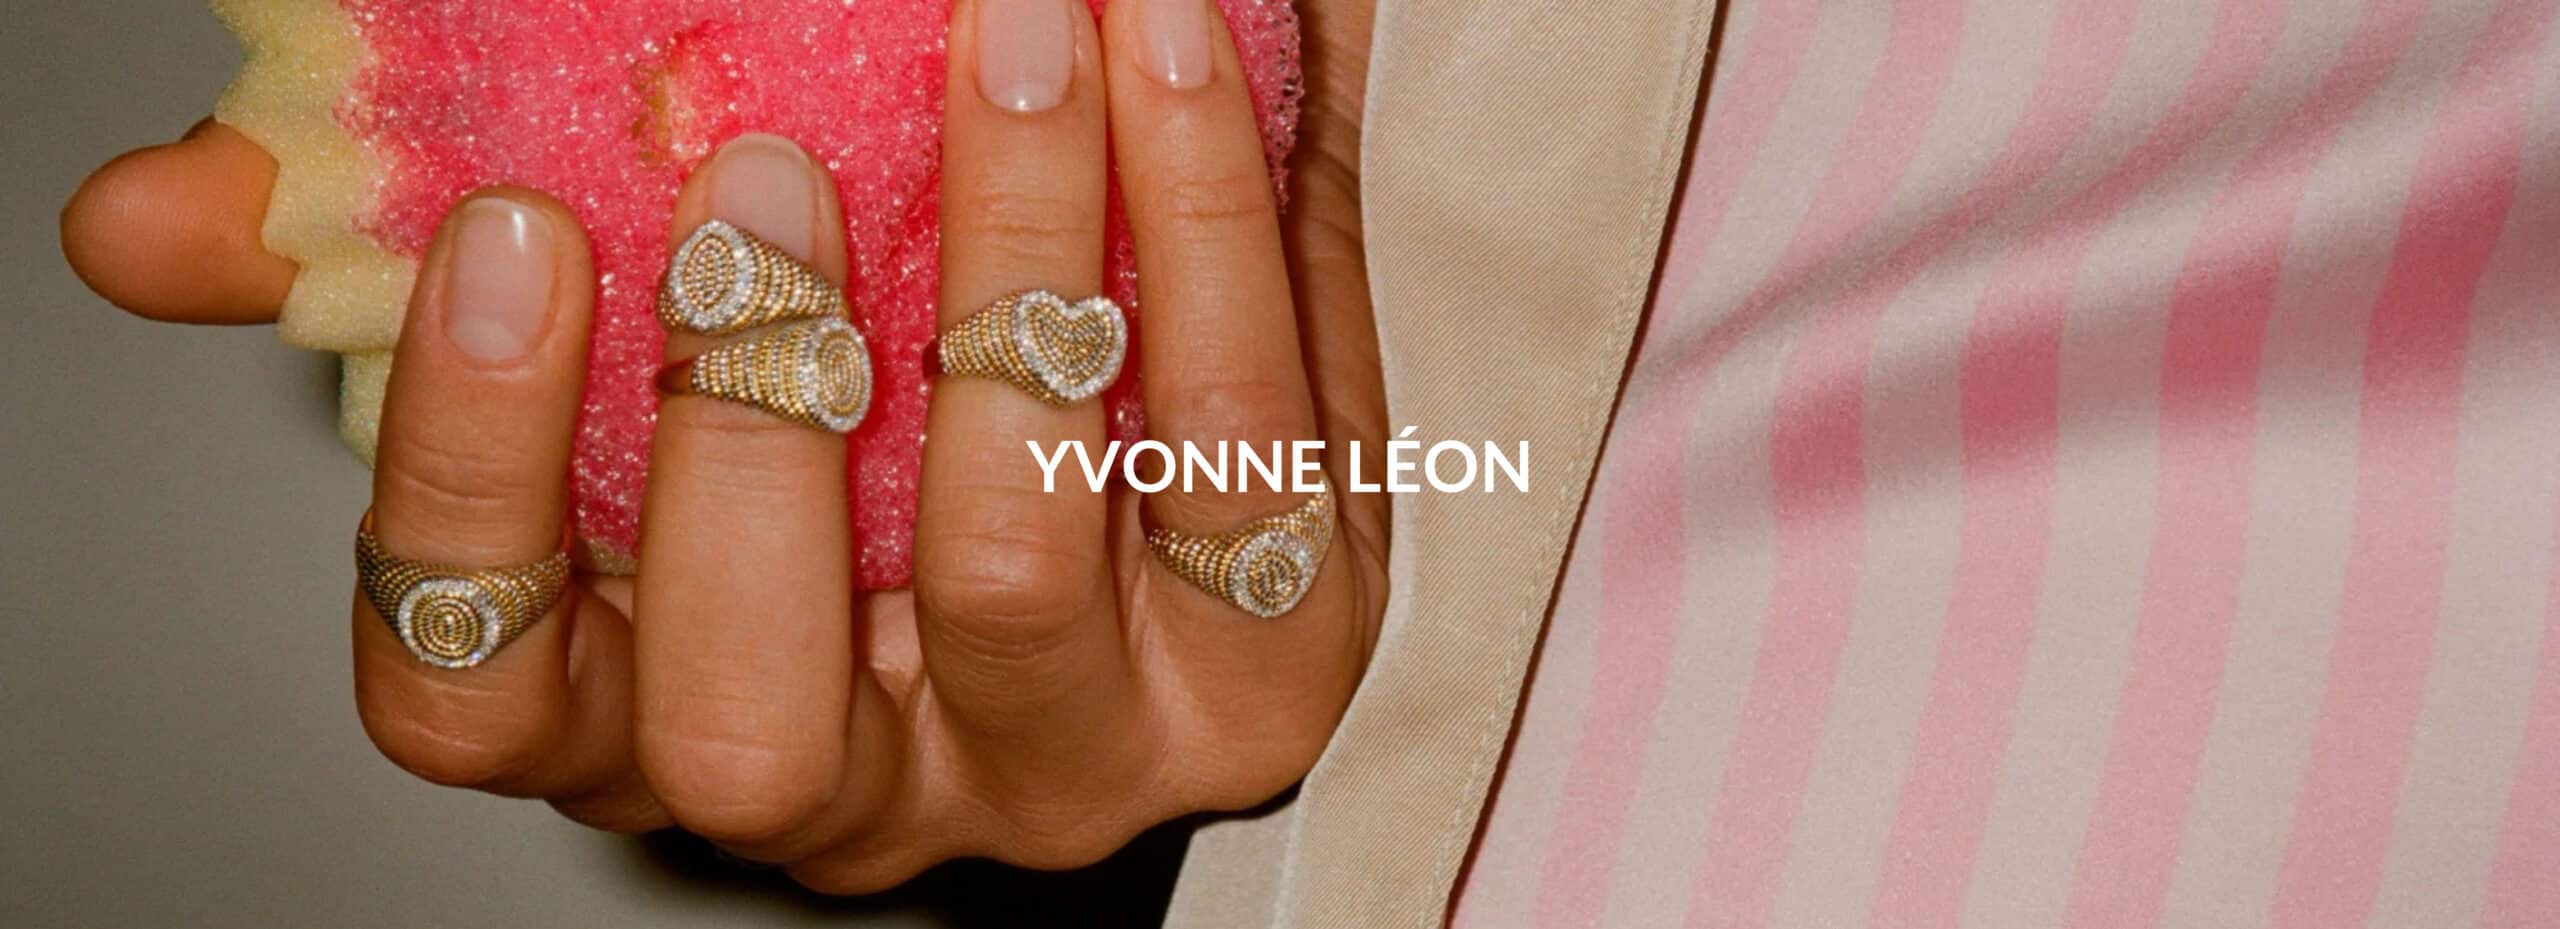 Yvonne Léon